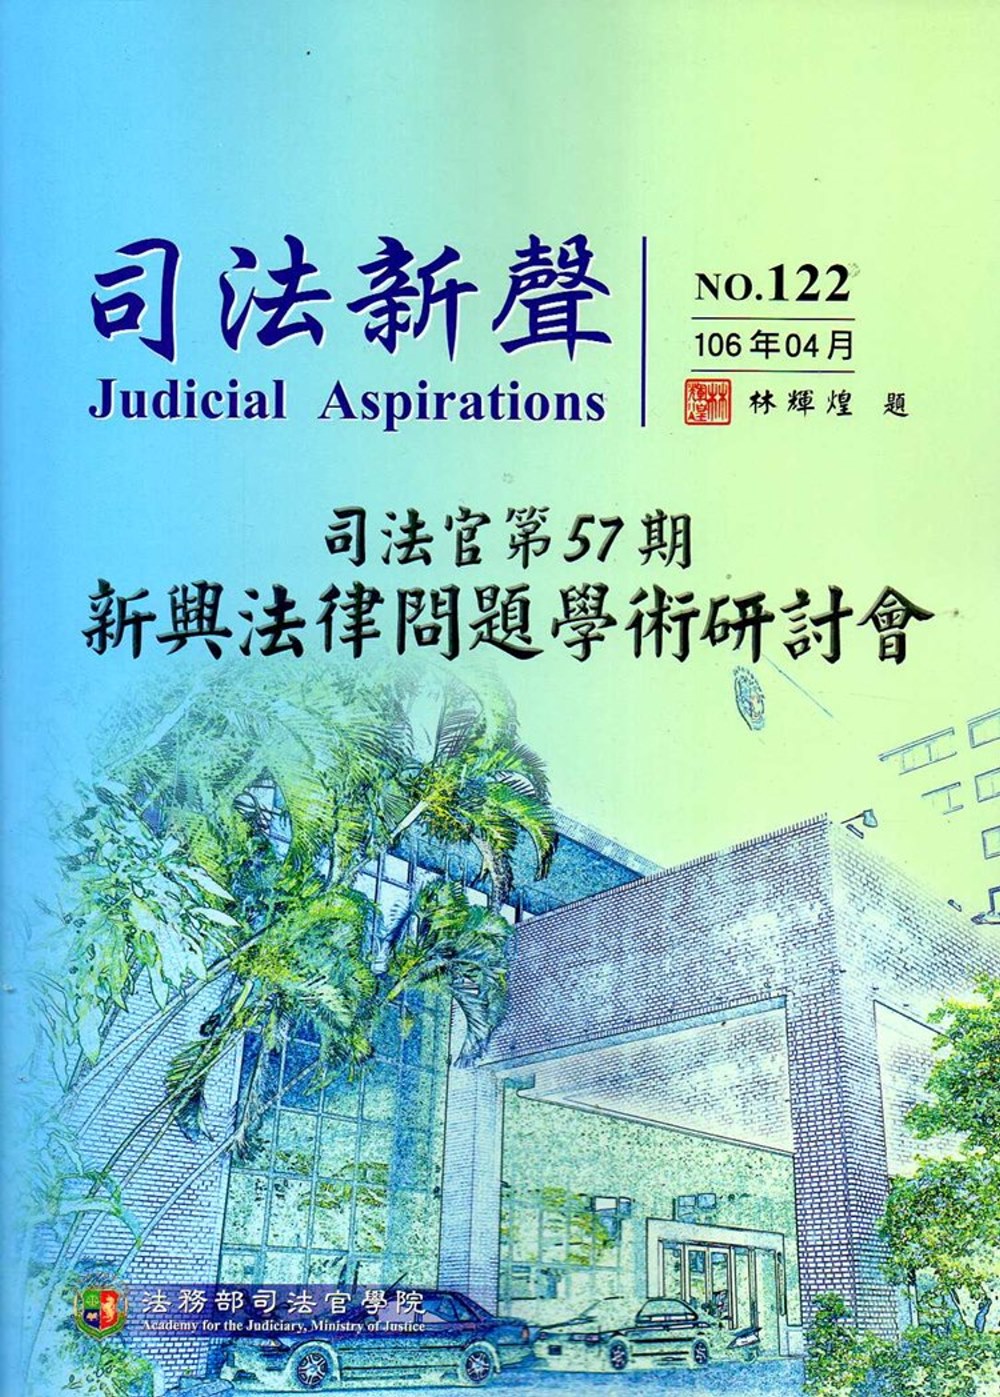 司法新聲122期 (106.04)